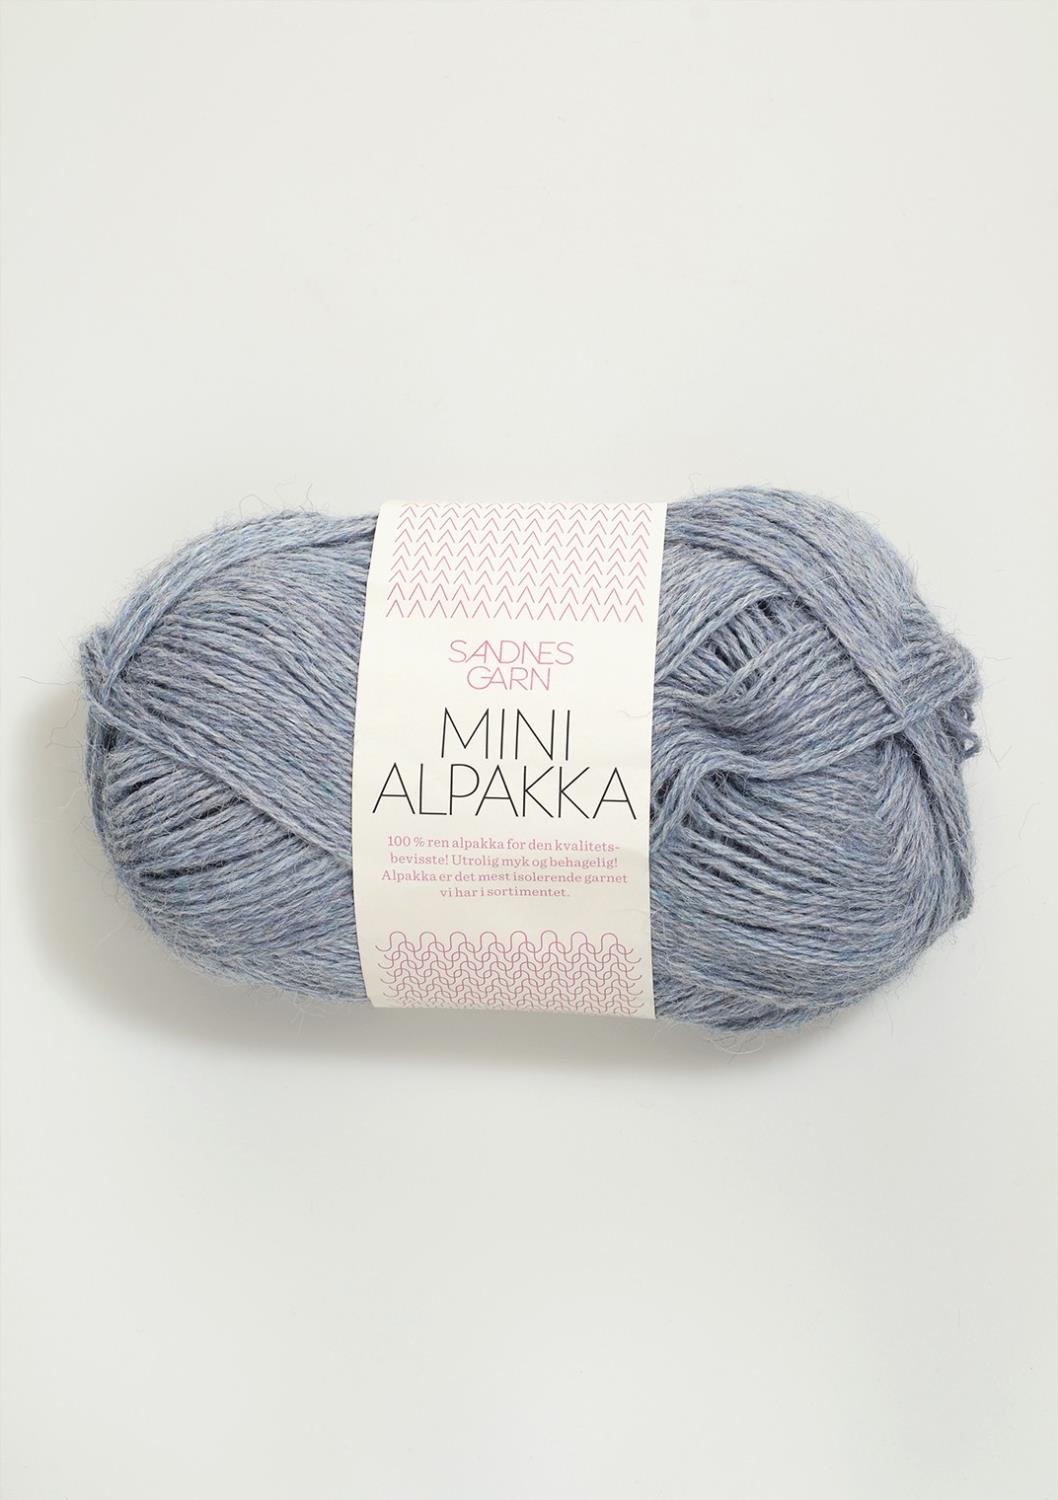 Mini Alpakka Sandnes 6221 - Lys Blåmelert